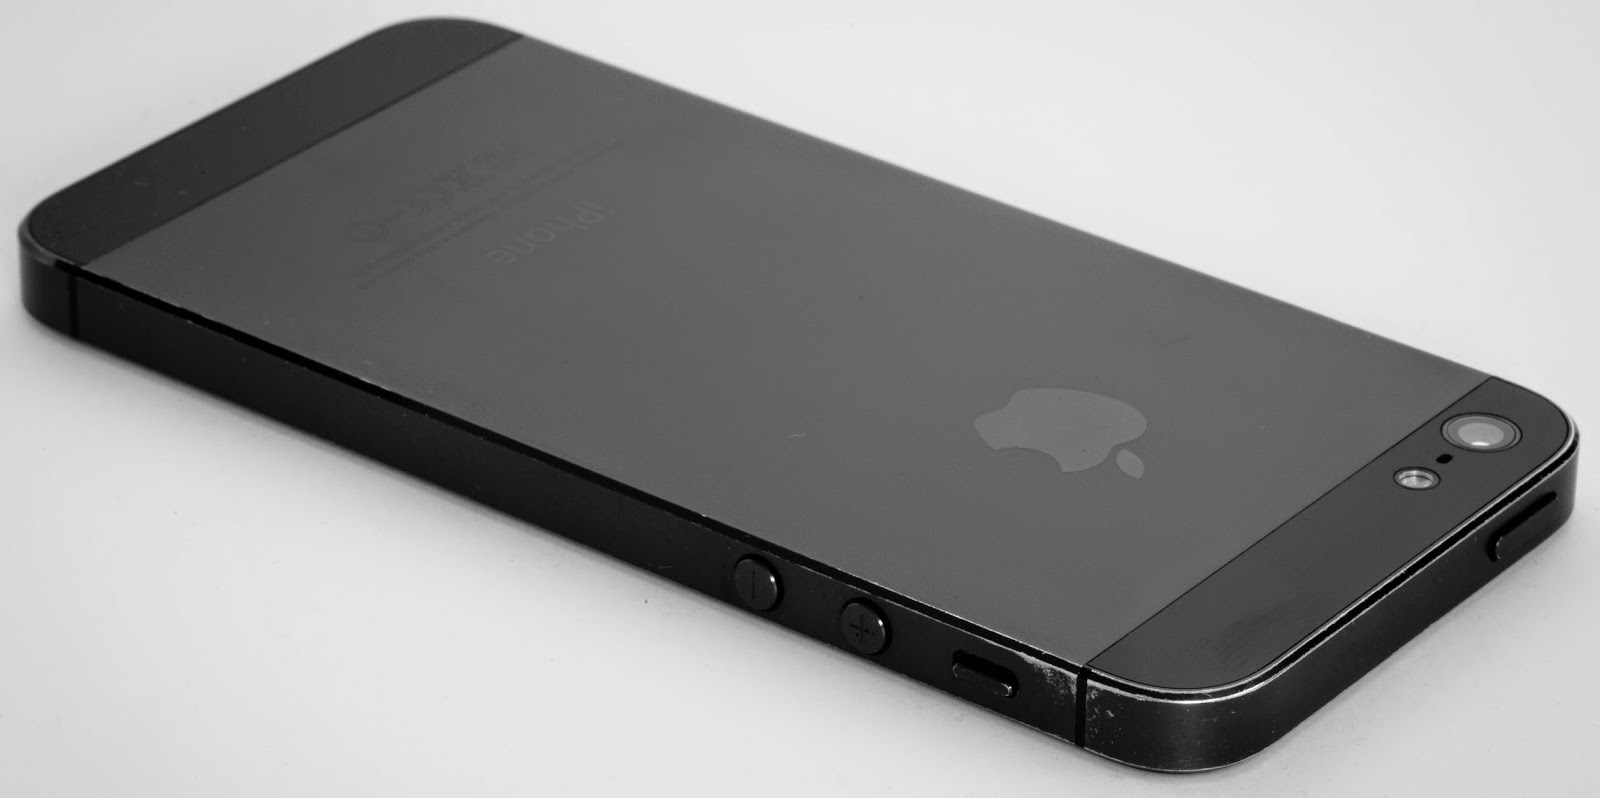 Harga Terbaru iPhone 5